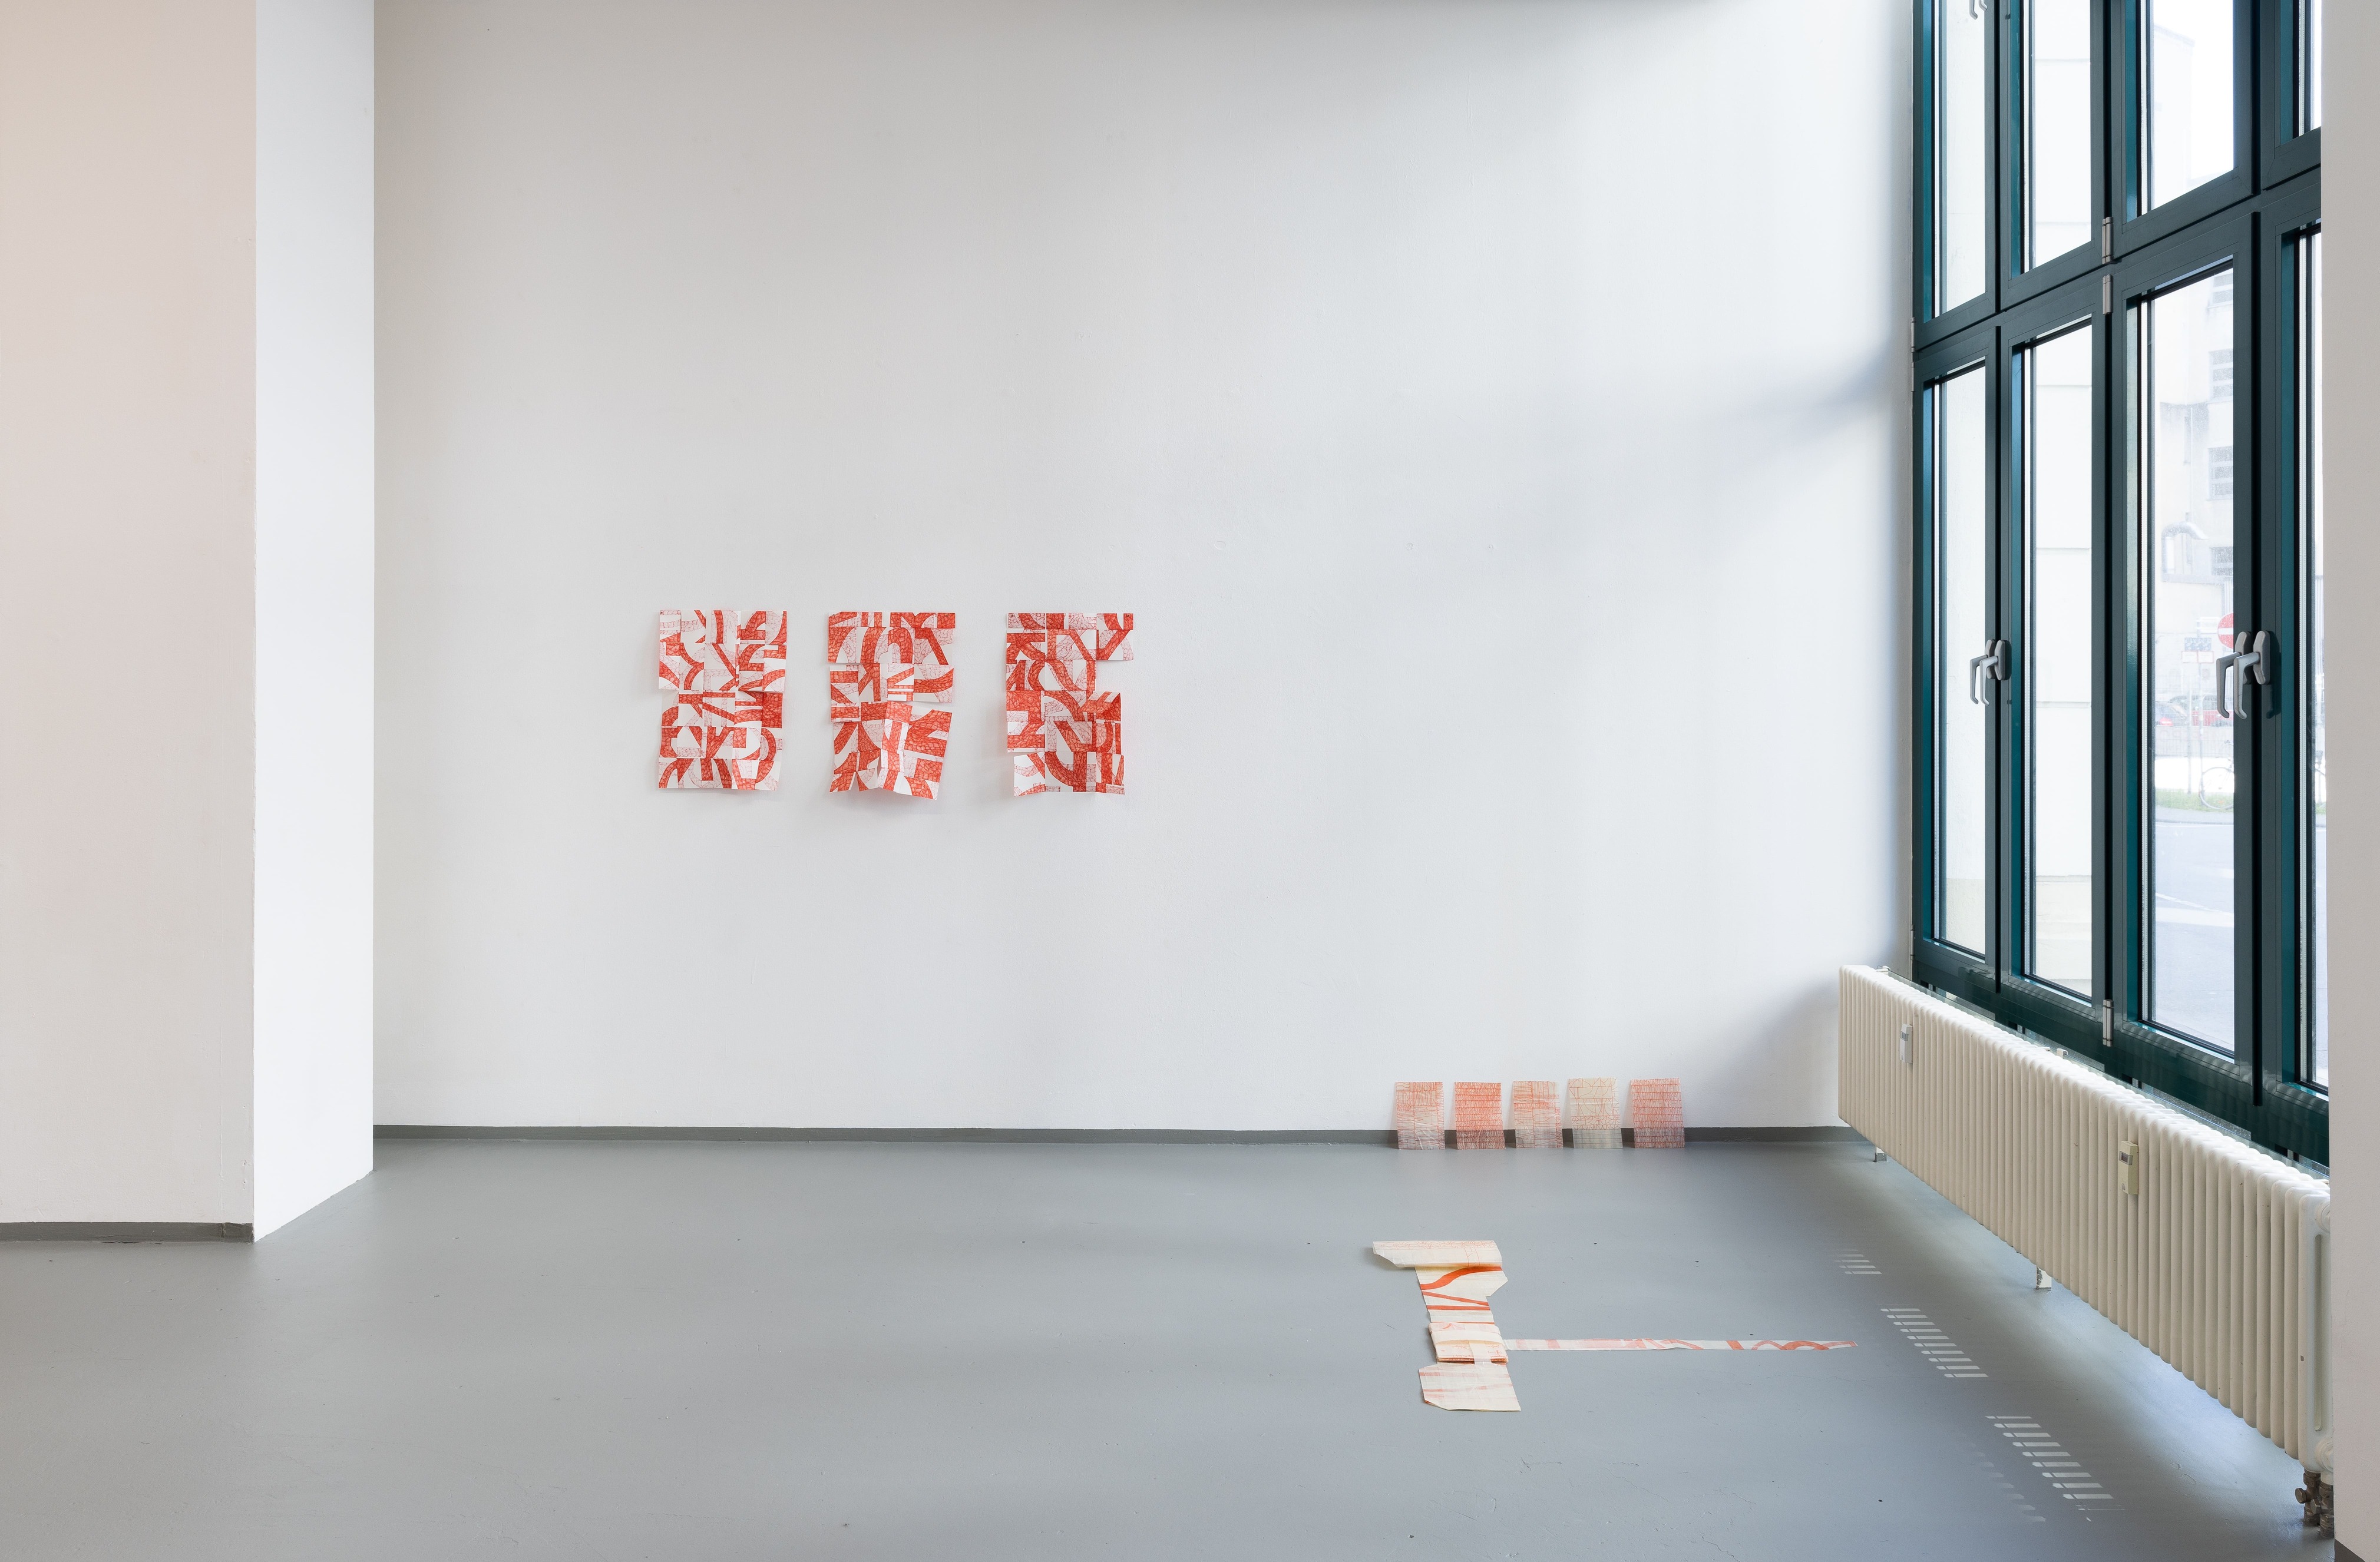   - 2023 alphabet (Teile für Welt), Neuer Kunstverein Wuppertal